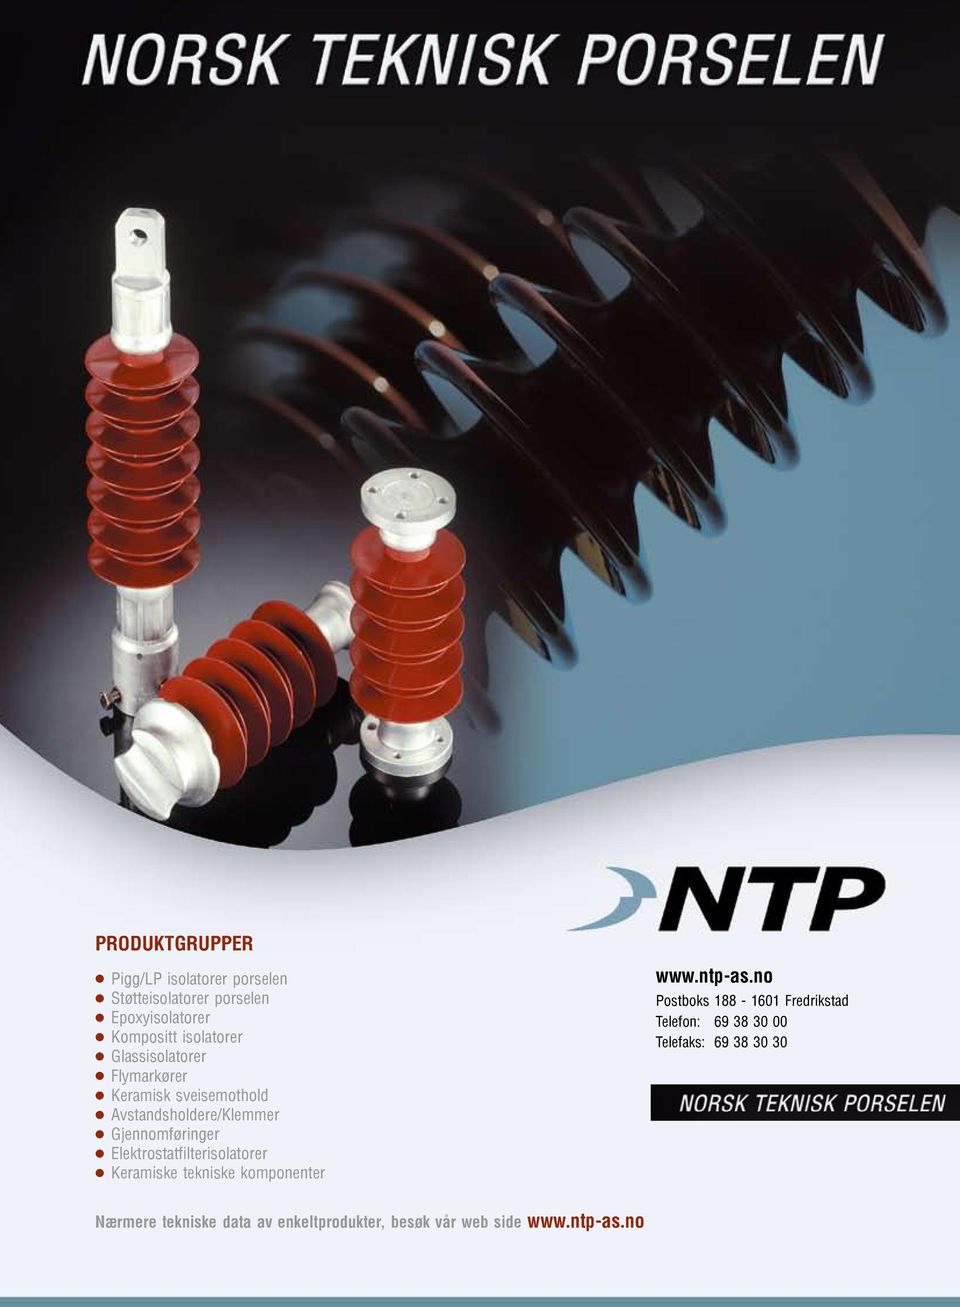 Elektrostatfilterisolatorer Keramiske tekniske komponenter www.ntp-as.